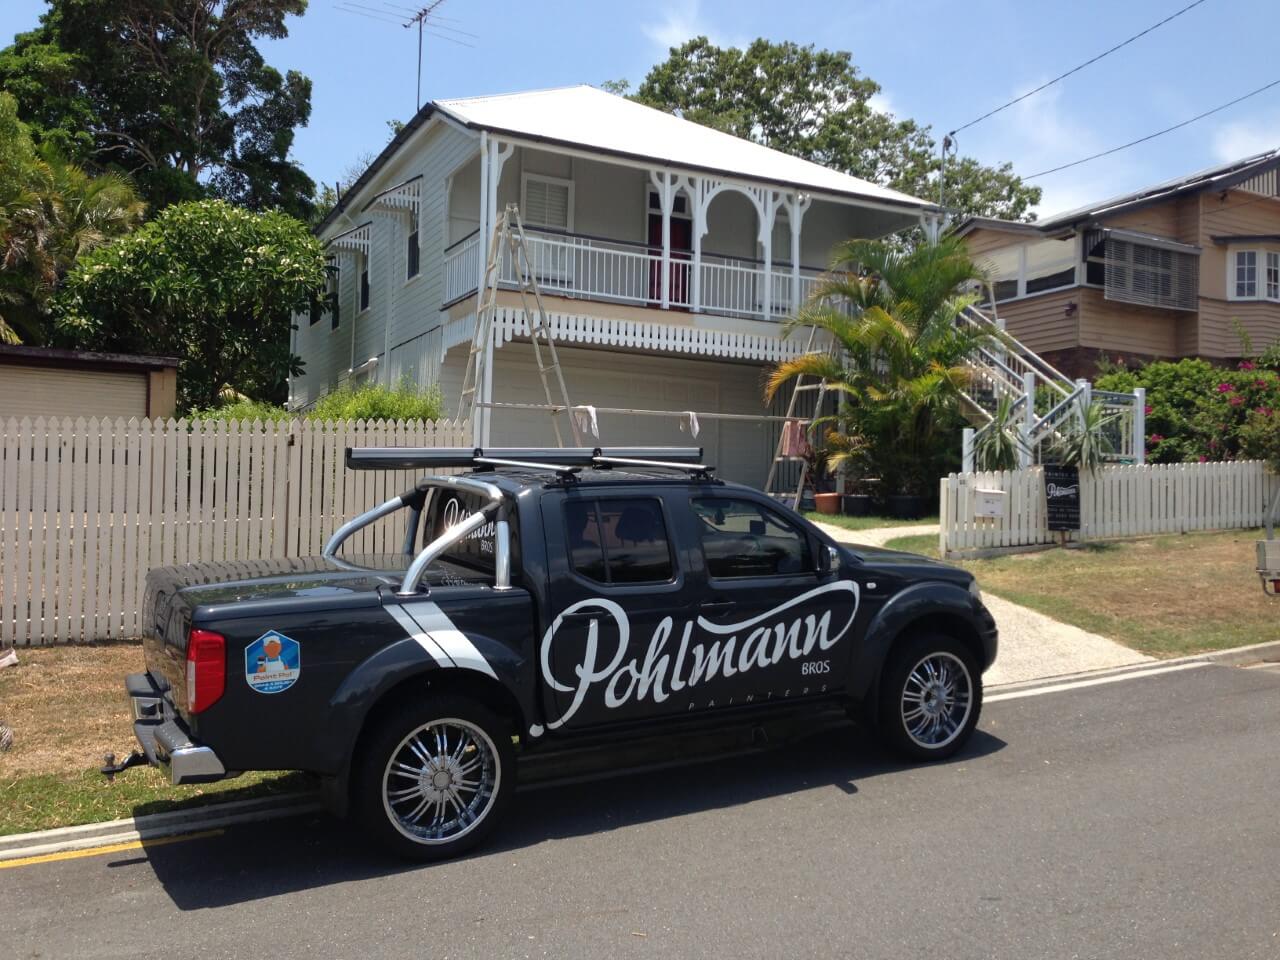 Pohlmanns Domestic Commercial Painters Brisbane 419